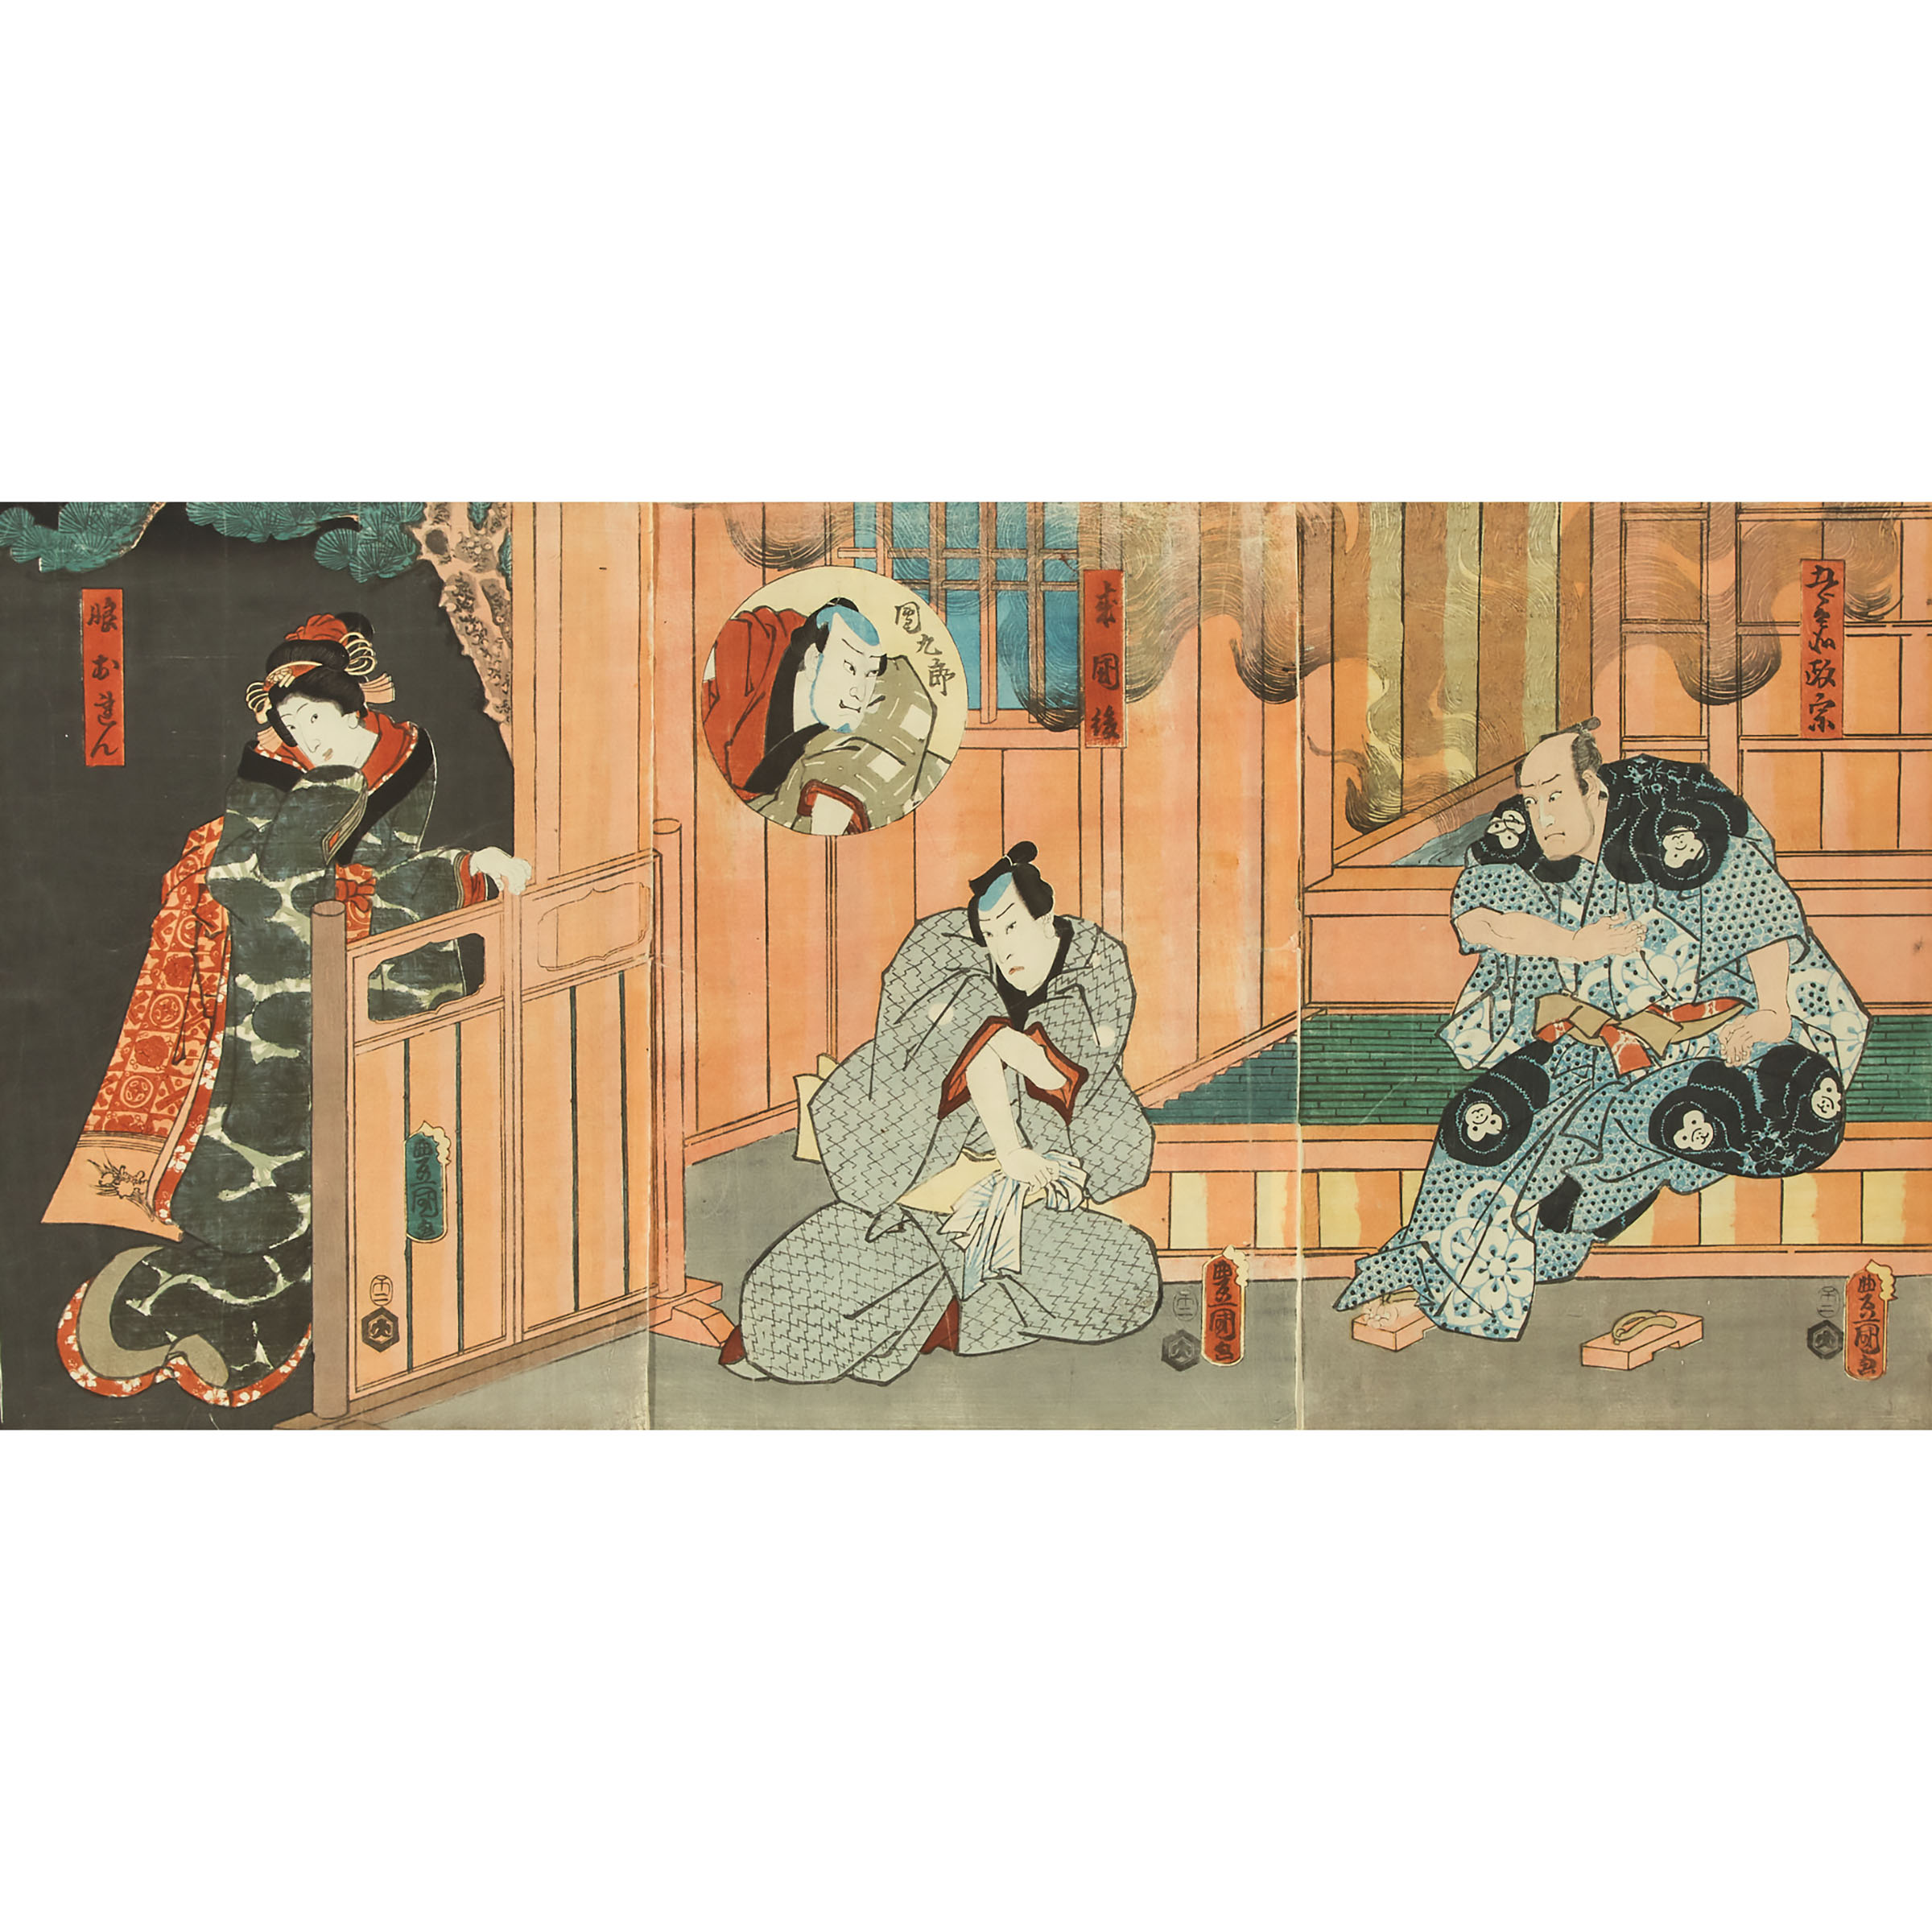 Utagawa Kunisada (Toyokuni III, 1786-1865), Actors Ichikawa Danjuro VI as Gorobei Masamune, Kataoka Nizaemon VIII as Rai Kunitoshi, Onoe Waichi II as Dankuro, and Iwai Kumesaburo III as the Daughter